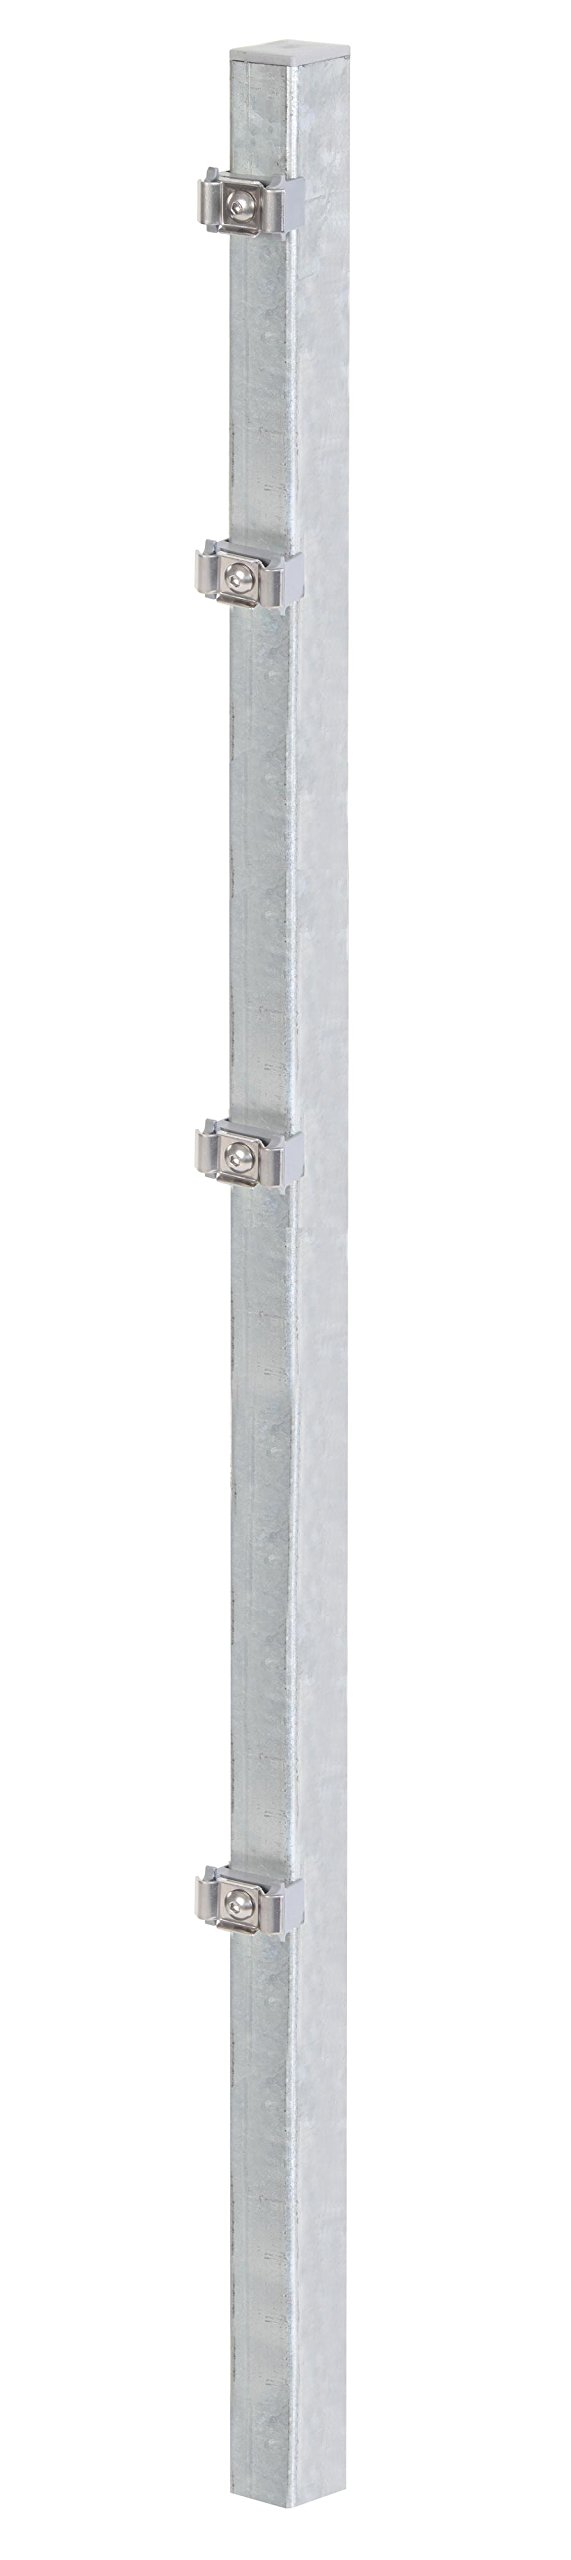 Gah-Alberts 677626 Zaunpfosten mit Klemmlaschenbefestigung für Doppelstab-Gittermatten , feuerverzinkt, 60 x 40 mm, 1500 mm